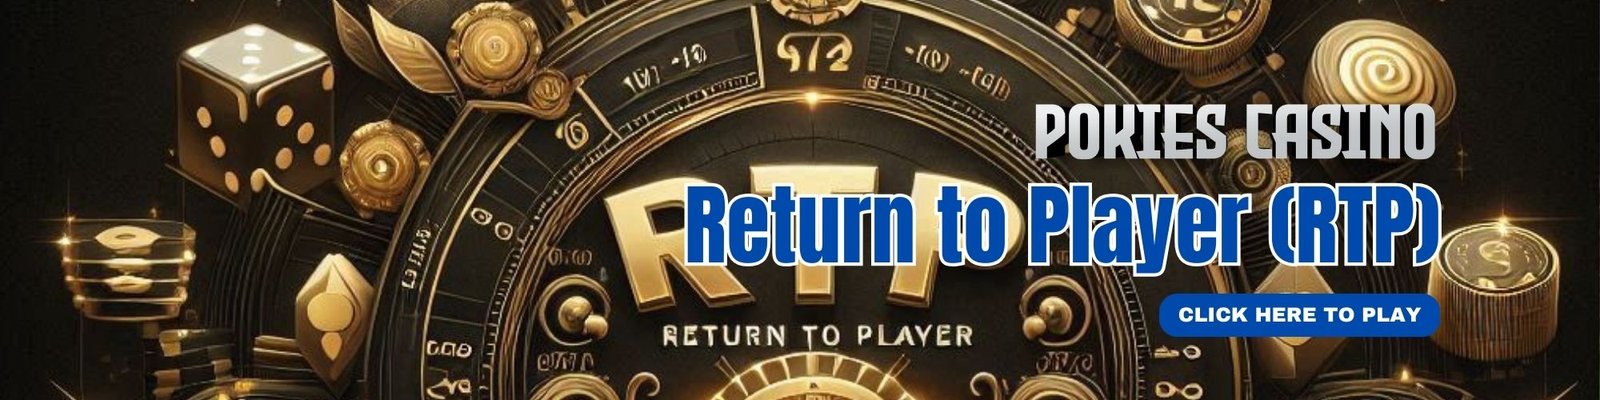 Return to Player (RTP) in PokiesCasino